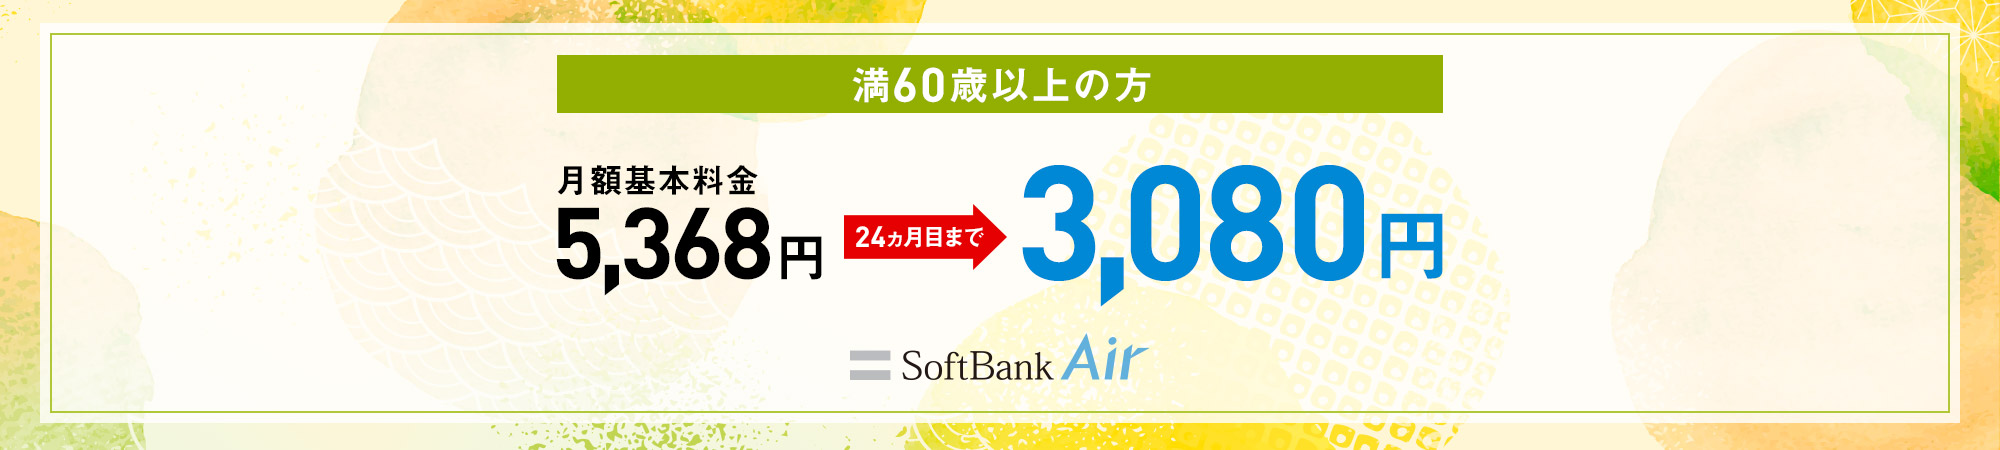 満60歳以上の方 月額基本料金5,368円が24ヶ月目まで3,080円 SoftBank Air